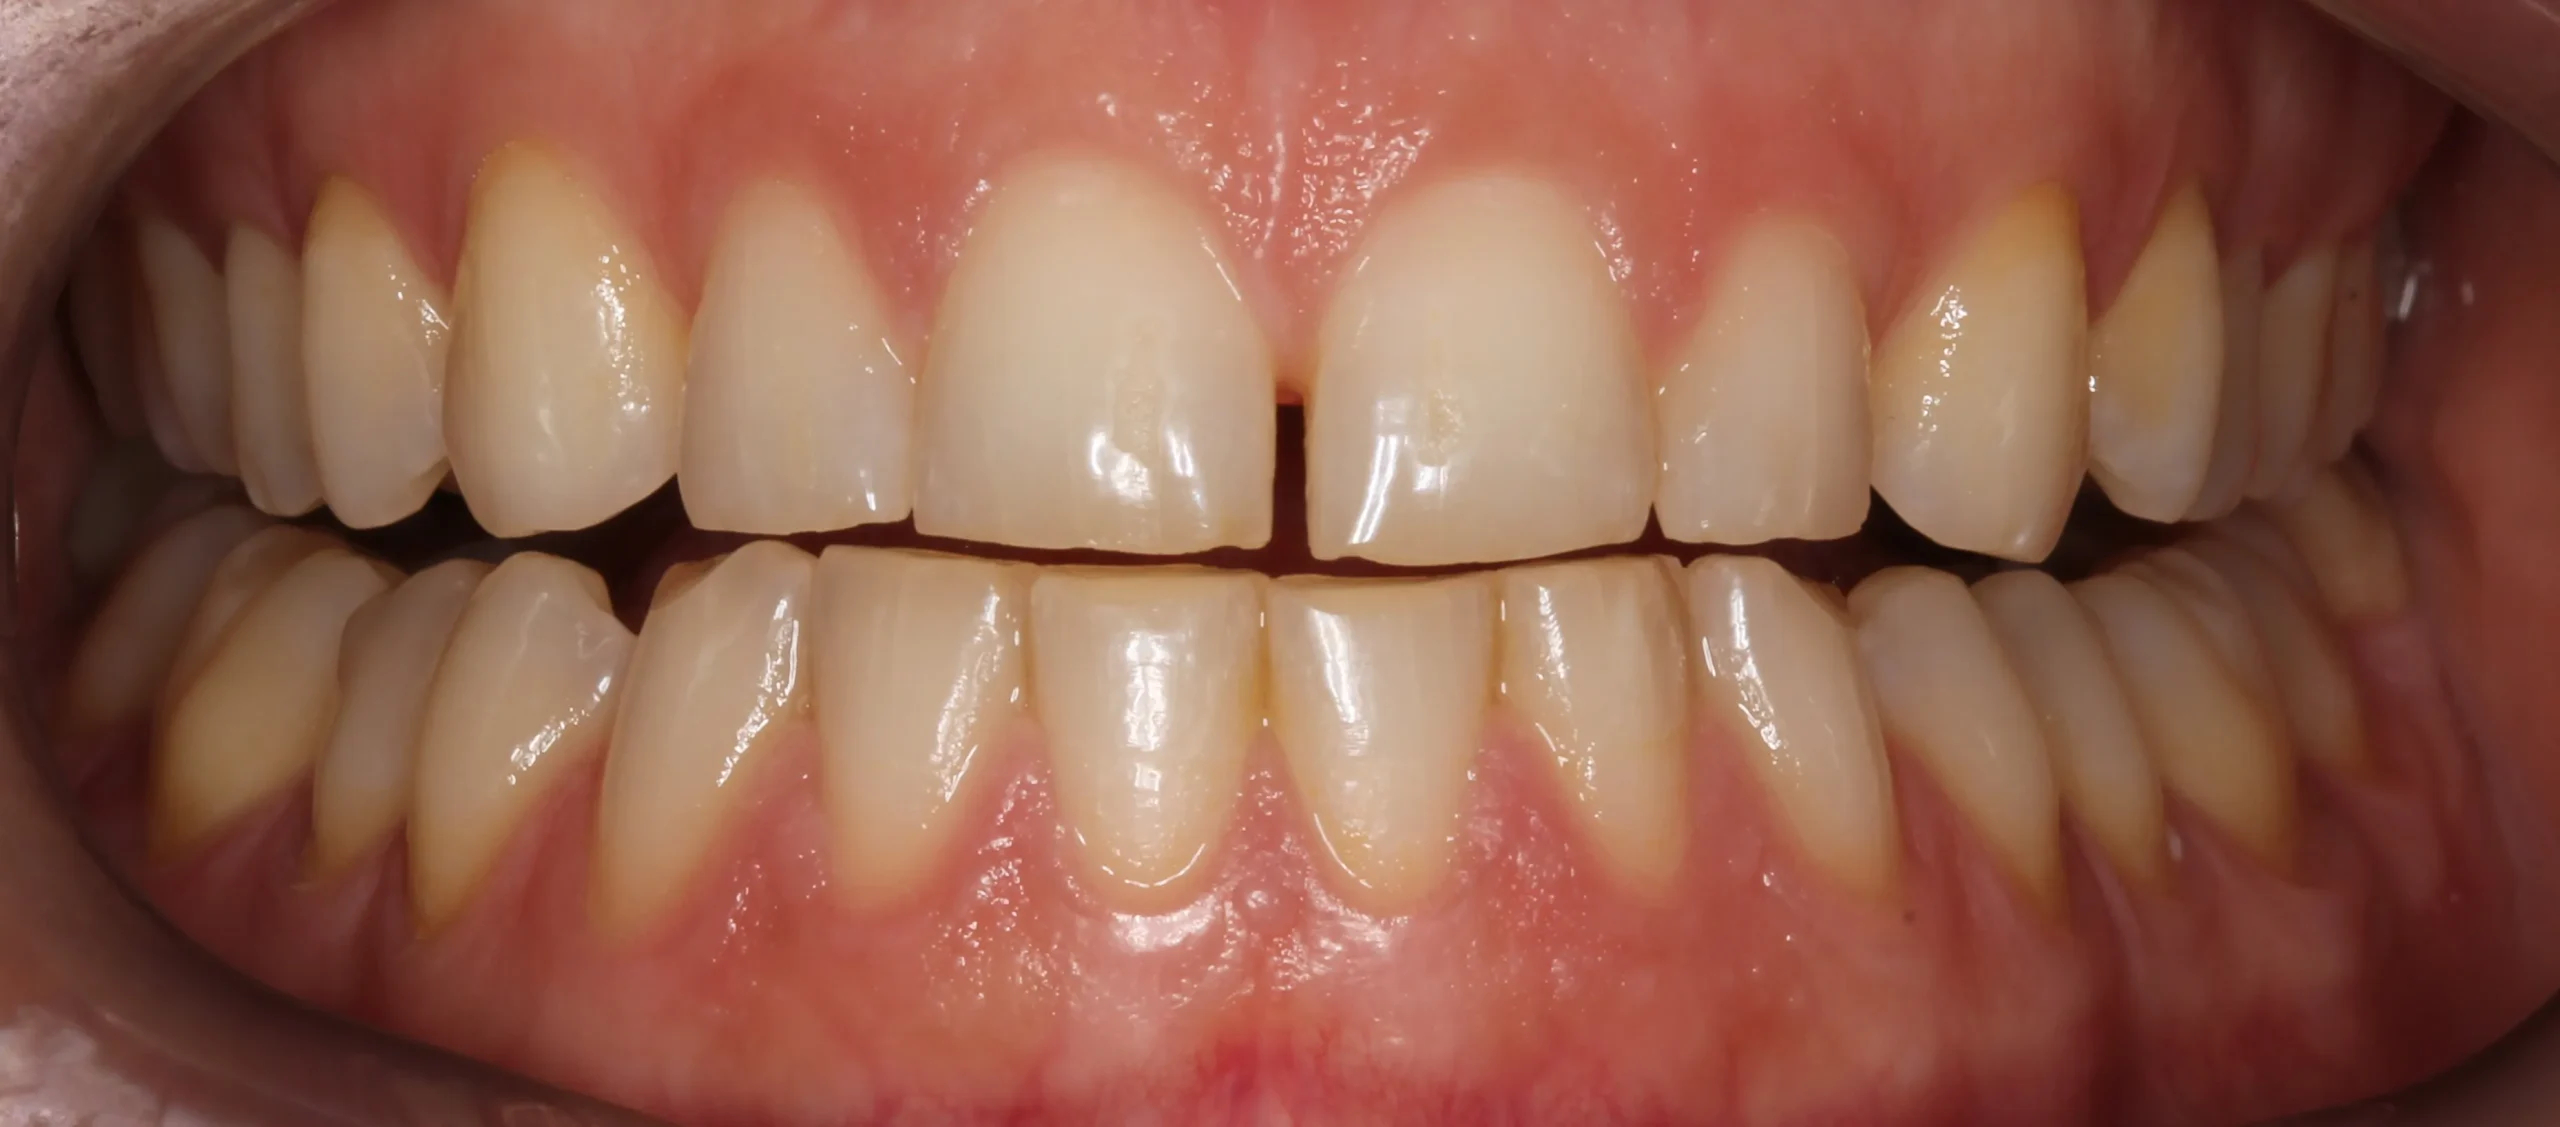 Mòn răng khiến răng dễ bị sâu đen